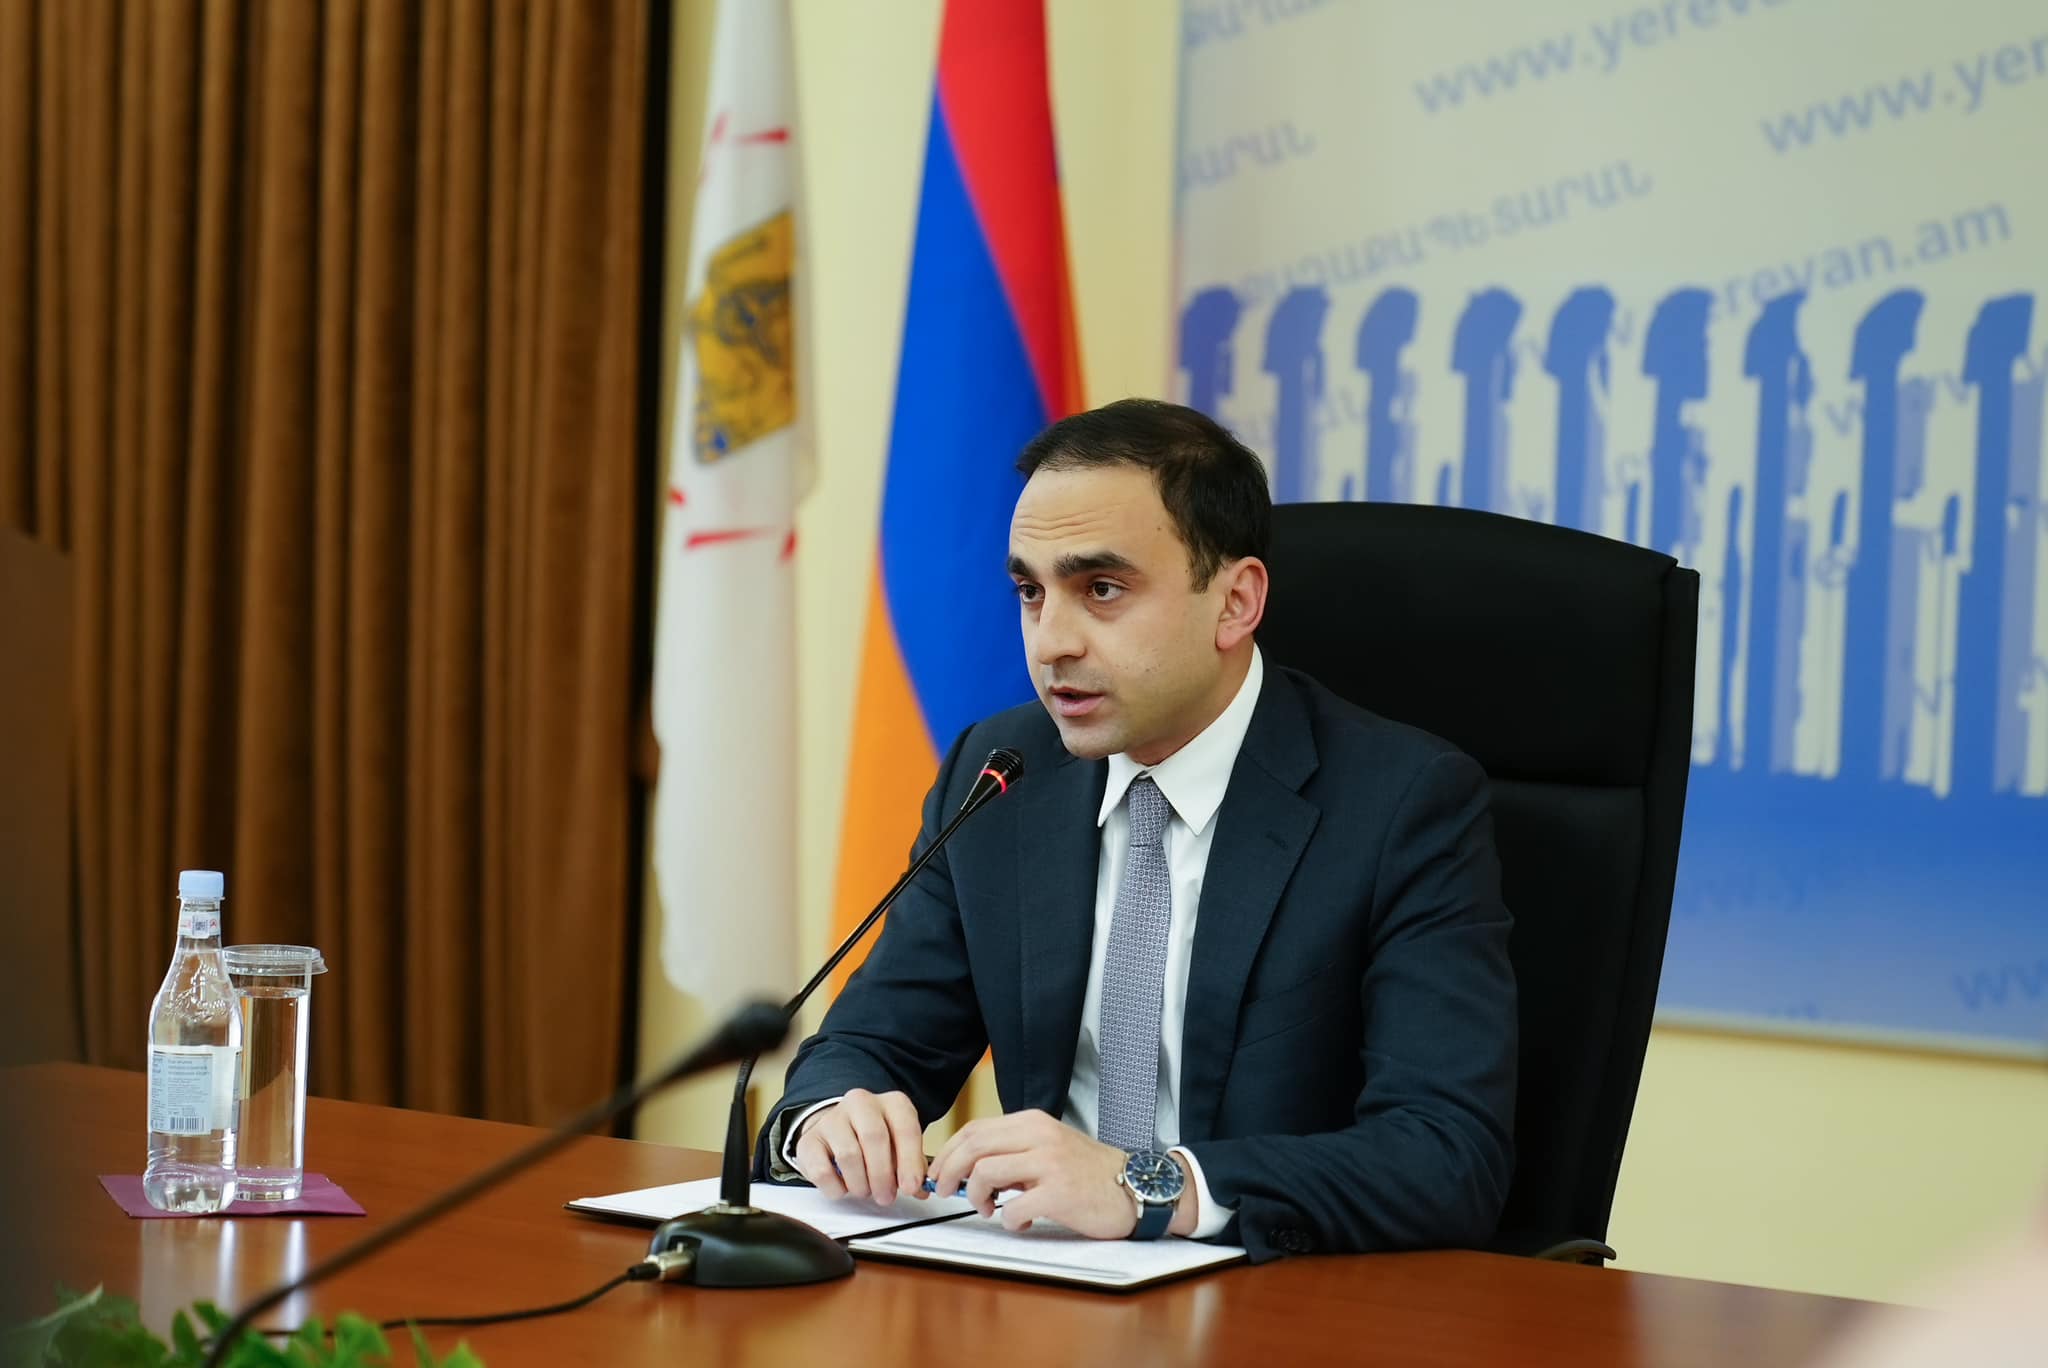 Мэр Еревана выразил соболезнования в связи с терактом в Москве